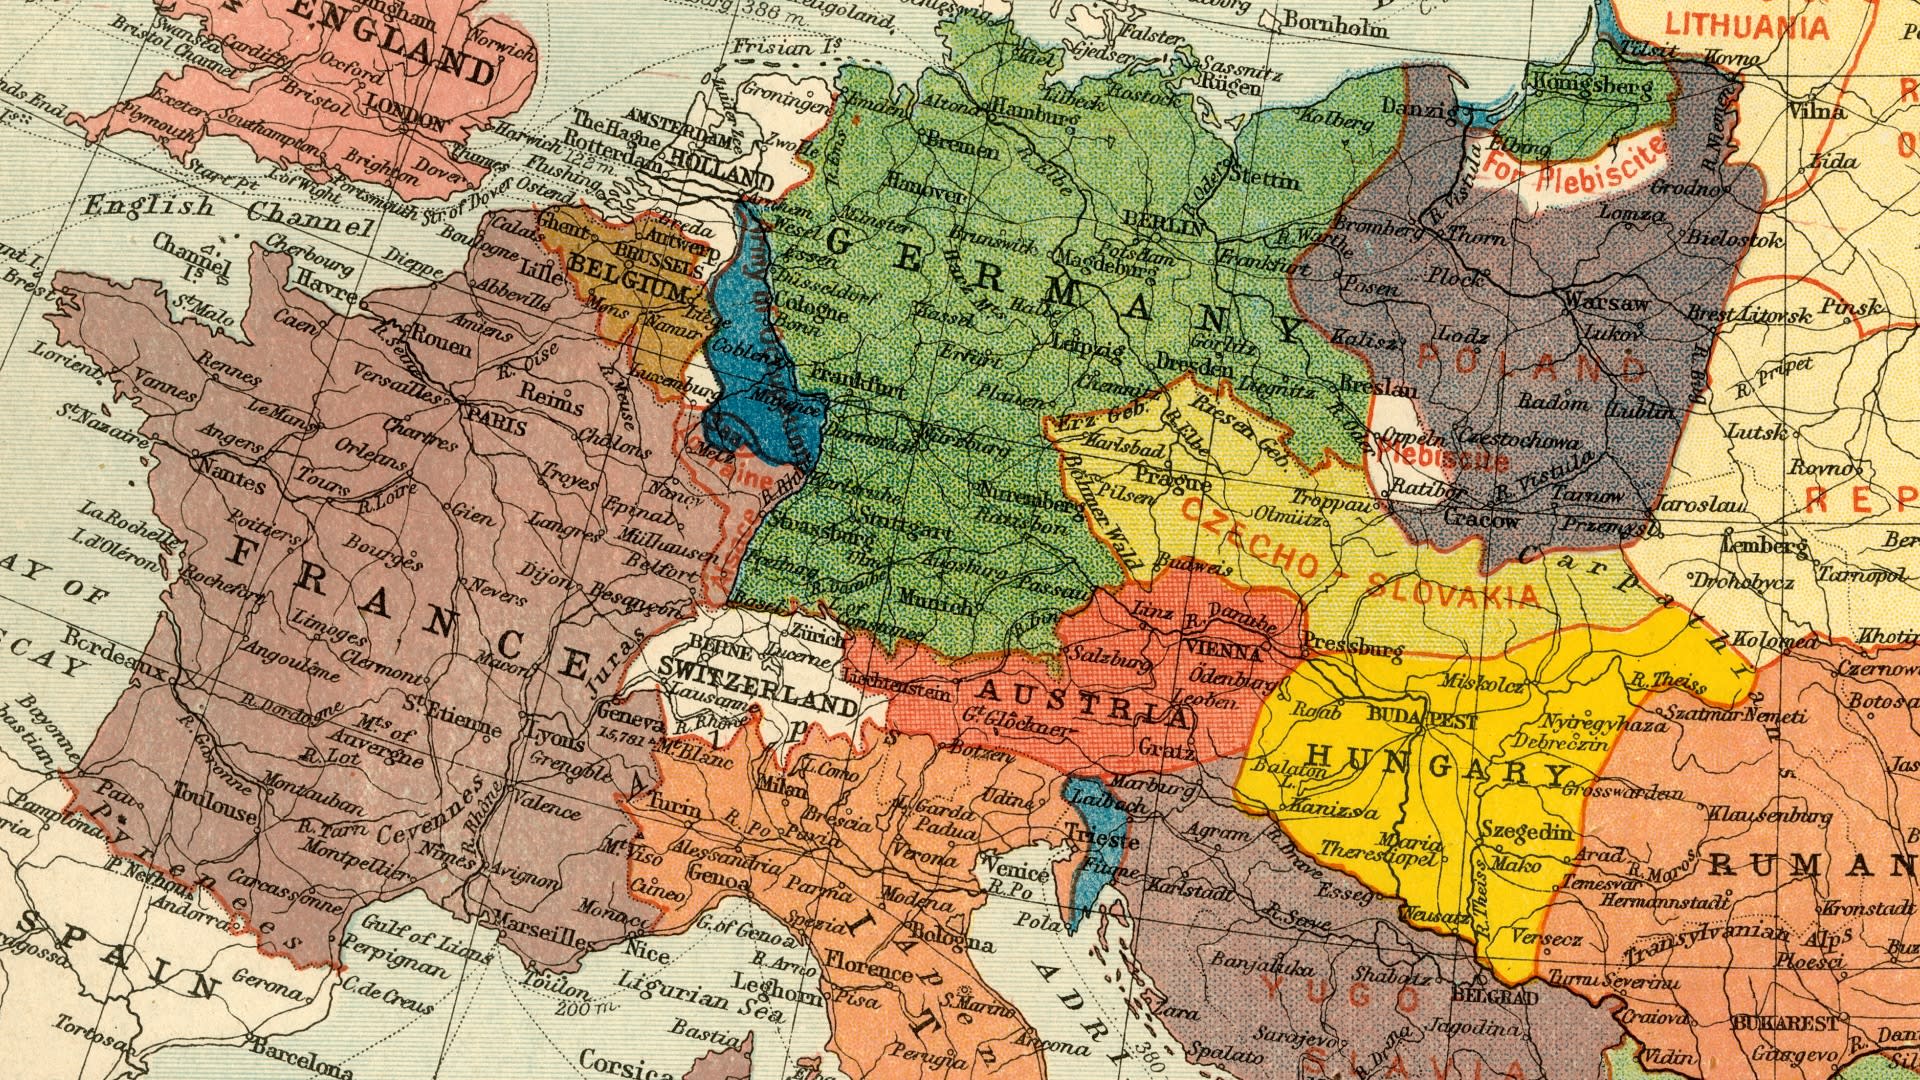 Mapa Evropy z roku 1920, která se P. A. Maasovi nelíbila. A tak přišel s vlastním návrhem...